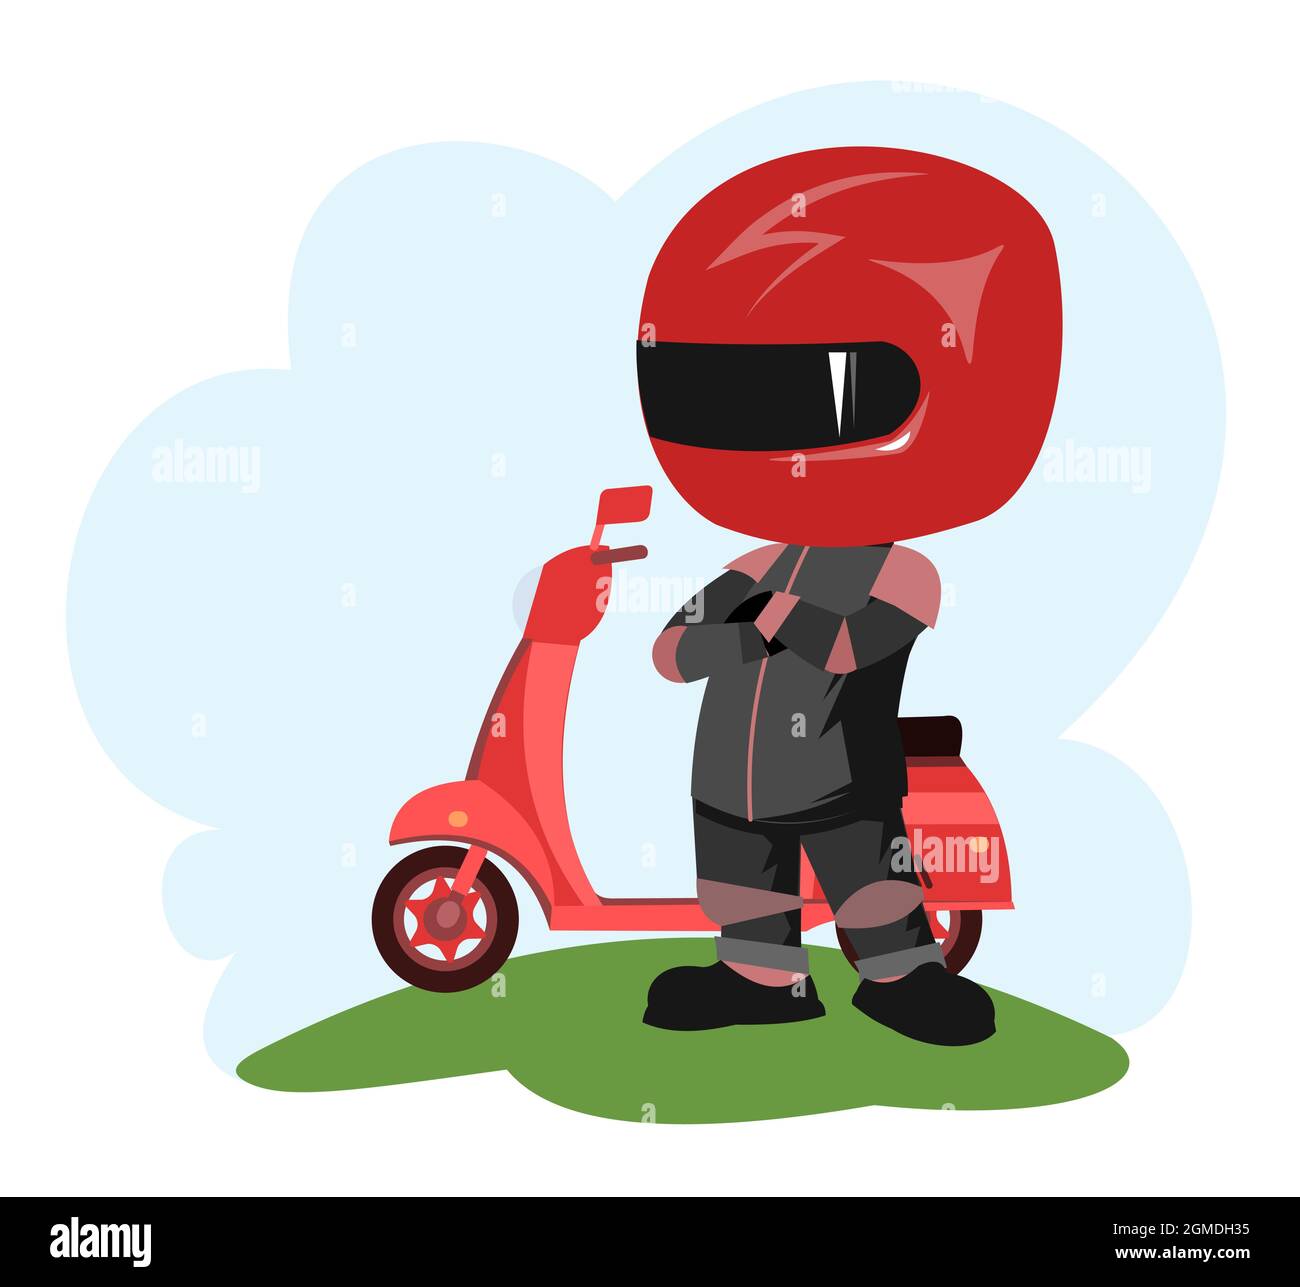 Motorroller-Fahrer. Biker-Cartoon. Abbildung für Kinder. Stolz auf den Sieg. In einer Sportuniform und einem roten Helm. Cooler Motorradfahrer. Isoliert auf Weiß Stock Vektor